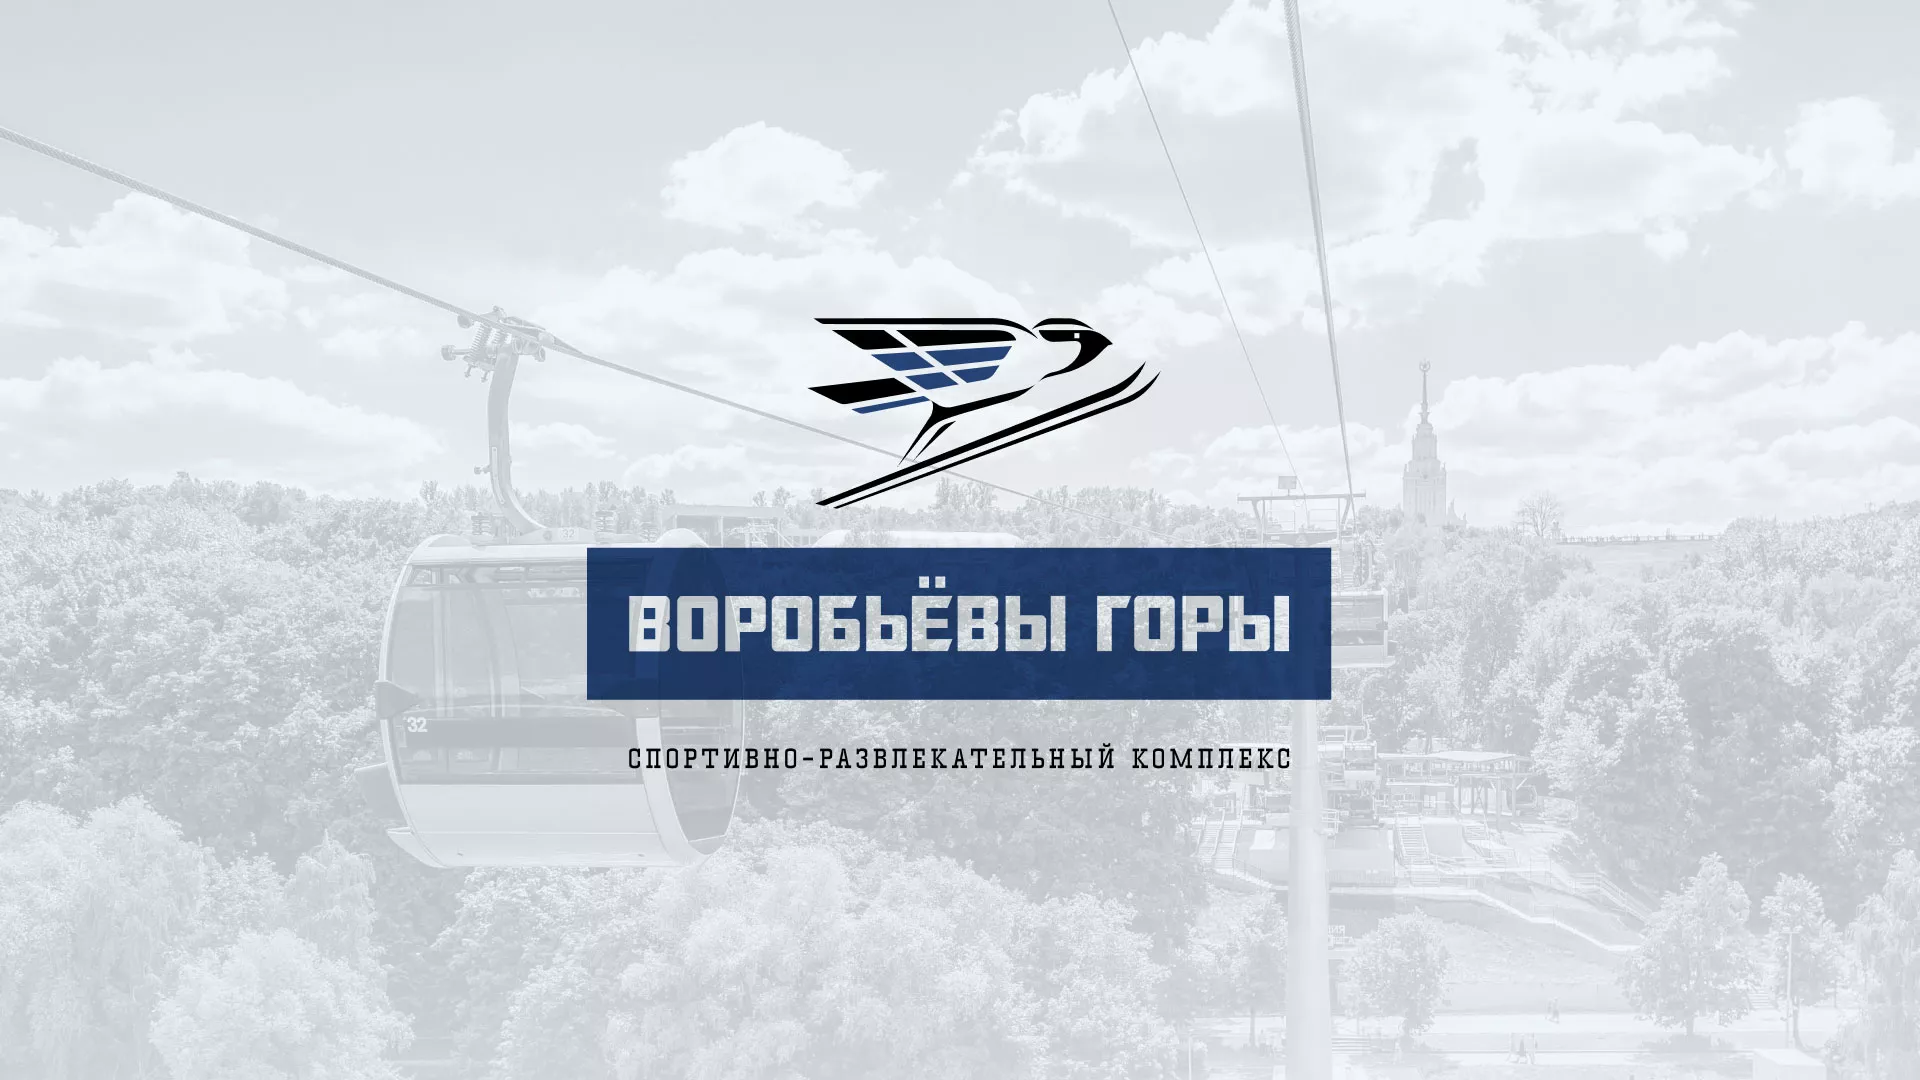 Разработка сайта в Усть-Куте для спортивно-развлекательного комплекса «Воробьёвы горы»